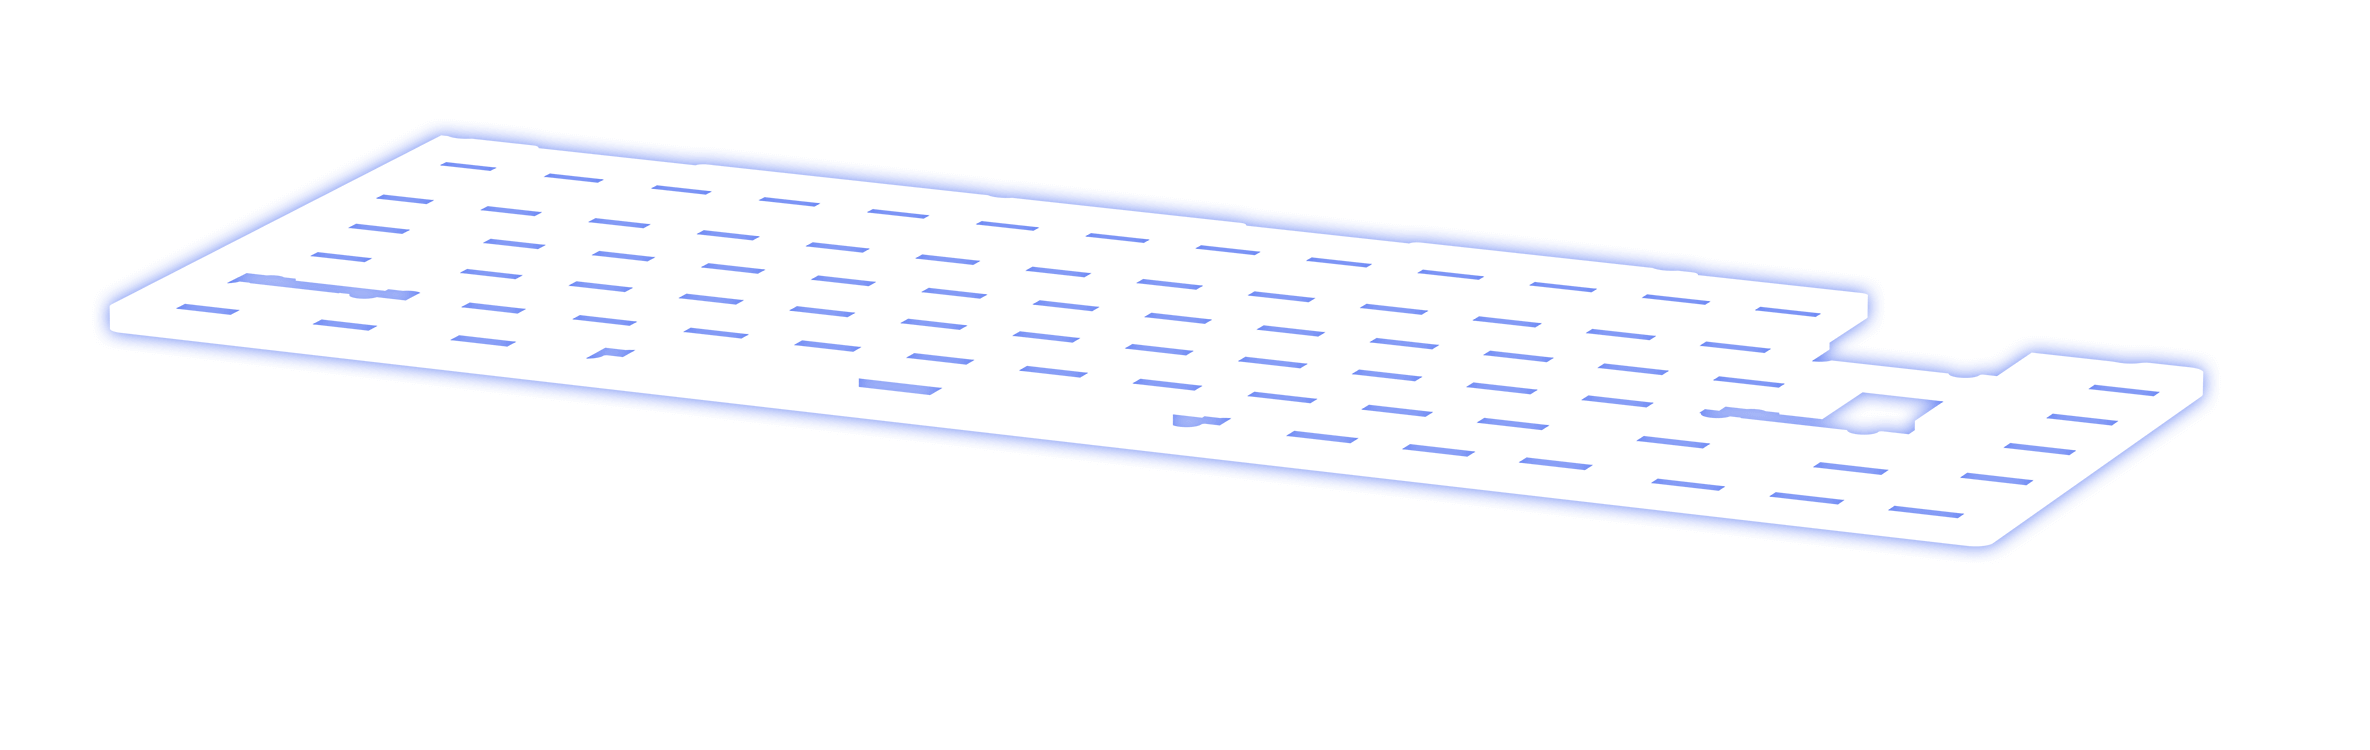 Zobrazenie vrstvy silikónovej podložky vo vnútri ROG Azoth